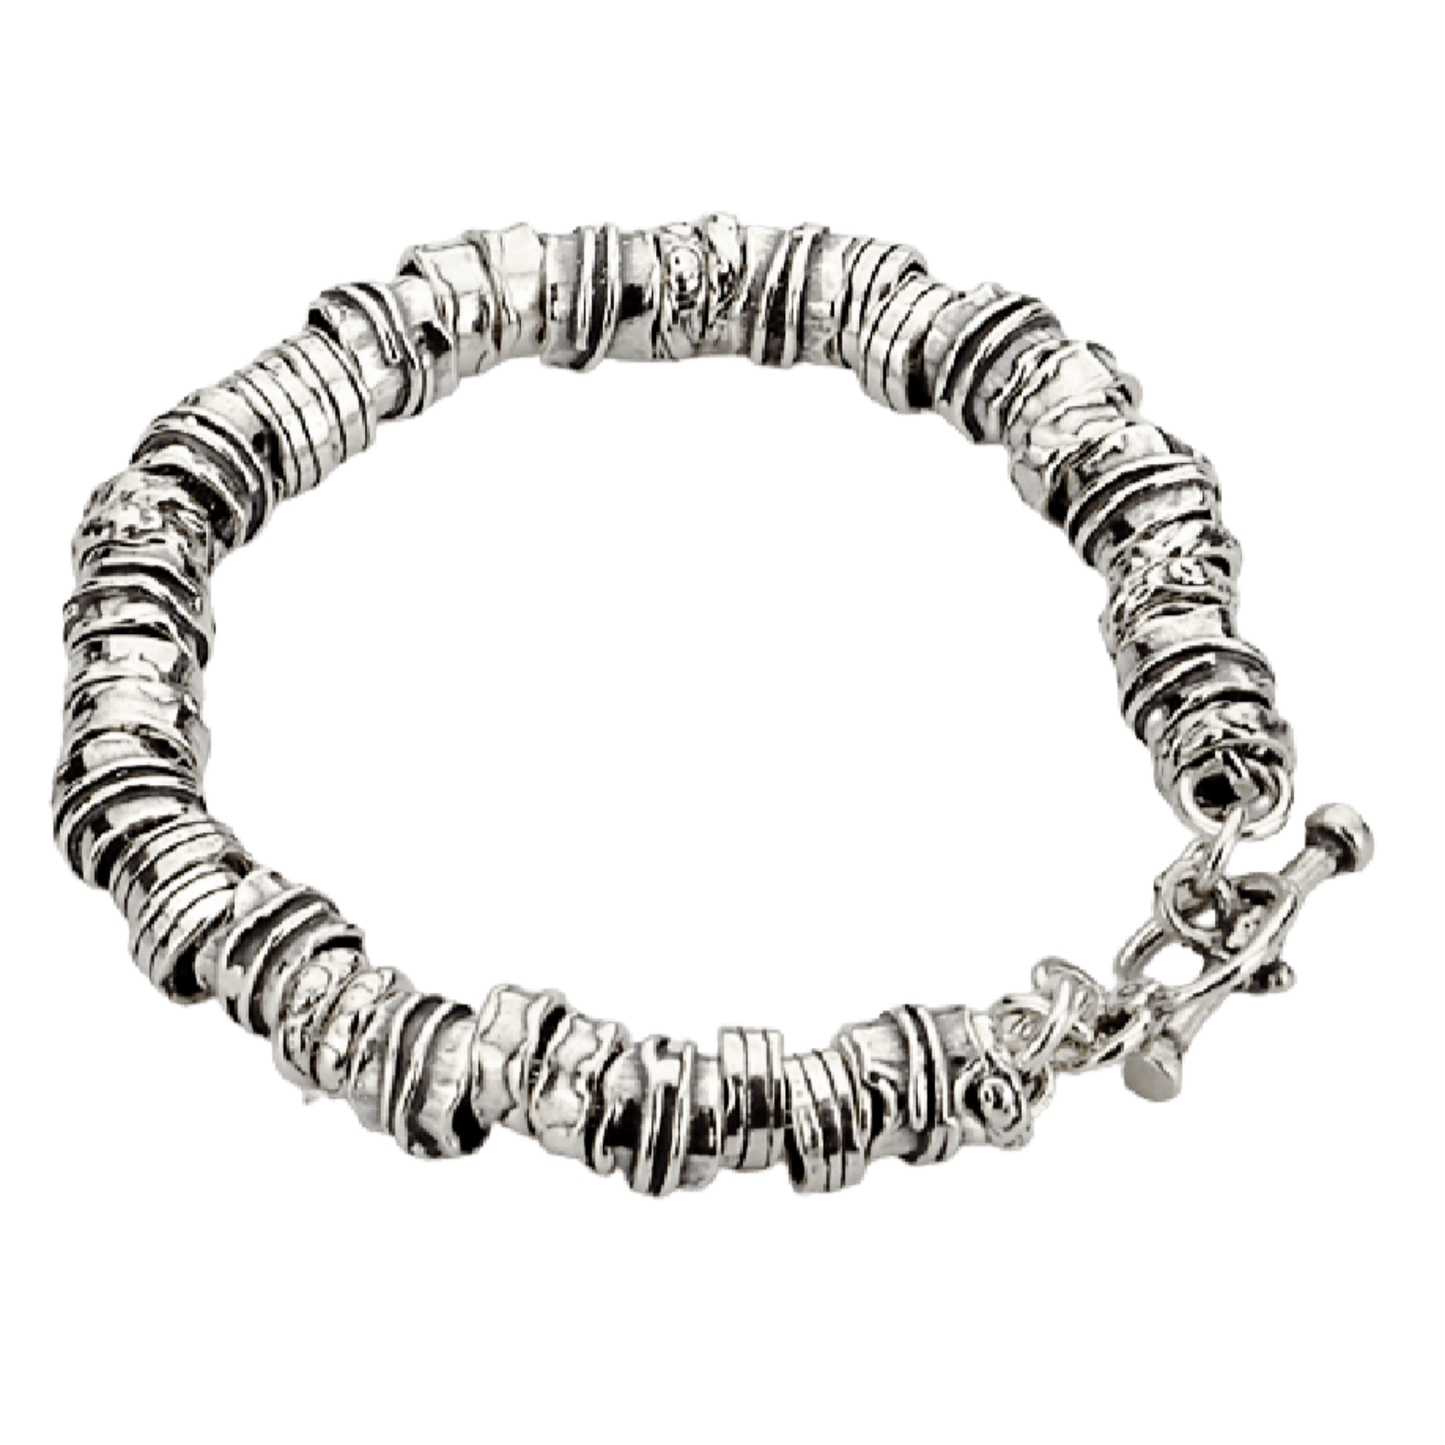 Bluenoemi Jewelry Bracelets silver Silver Bracelet for woman. Sterling silver Boho-chic jewelry.